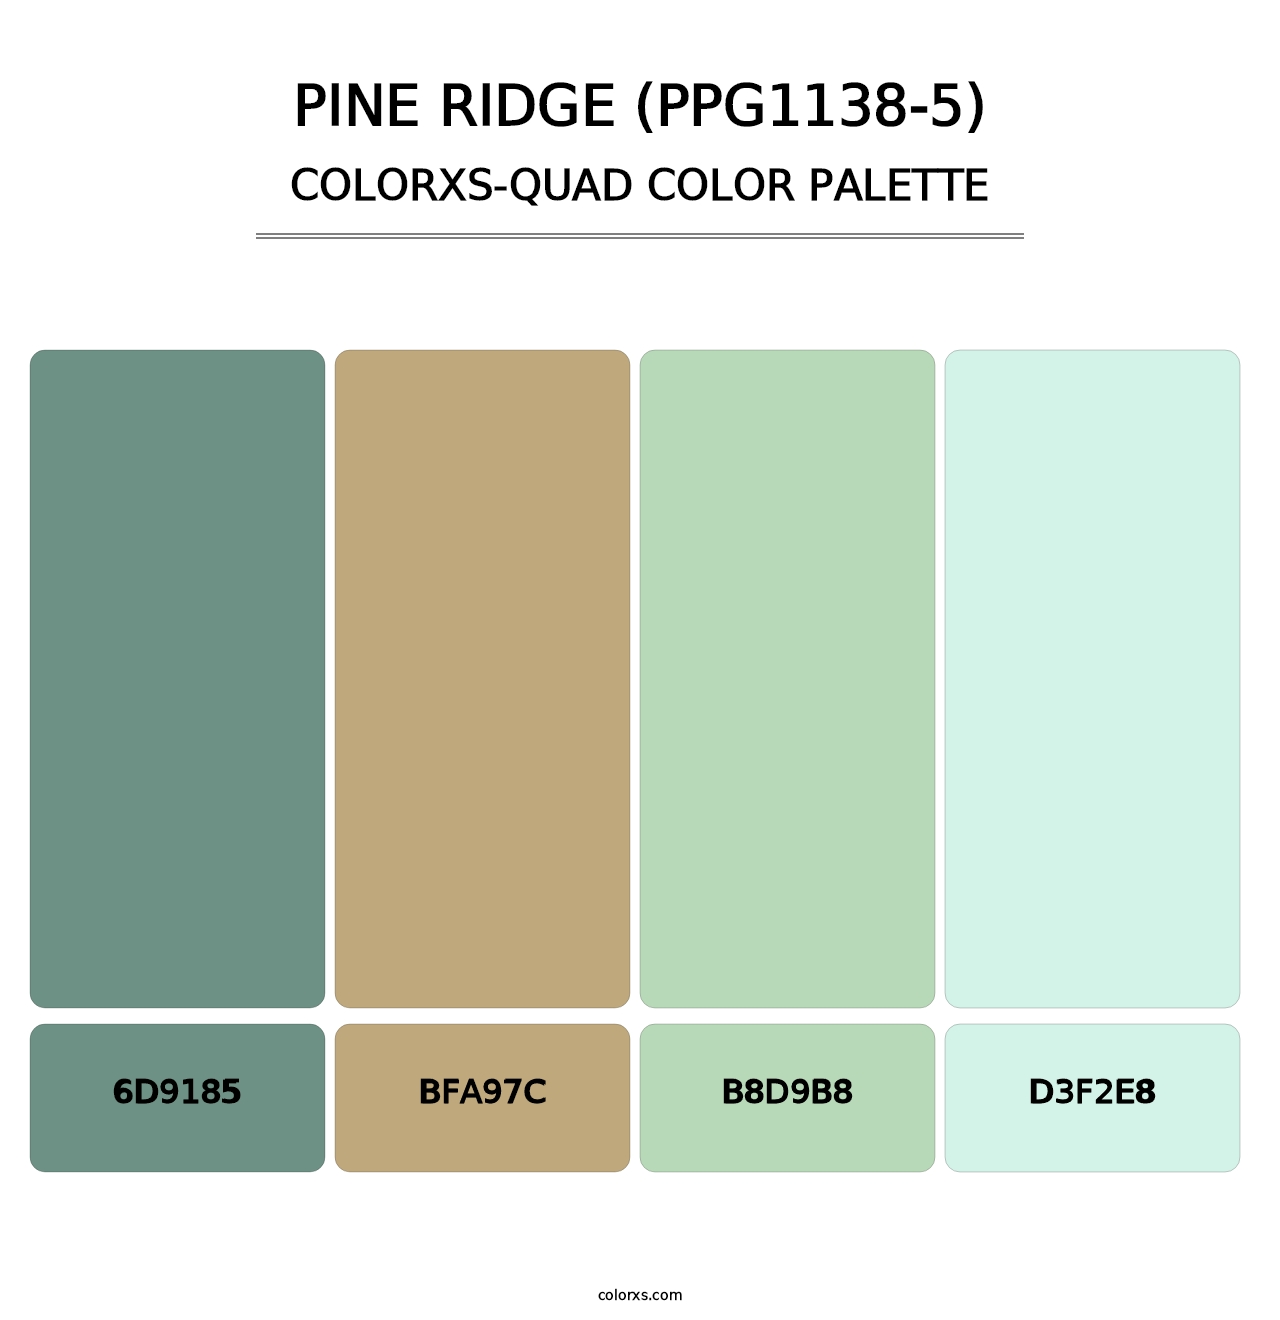 Pine Ridge (PPG1138-5) - Colorxs Quad Palette